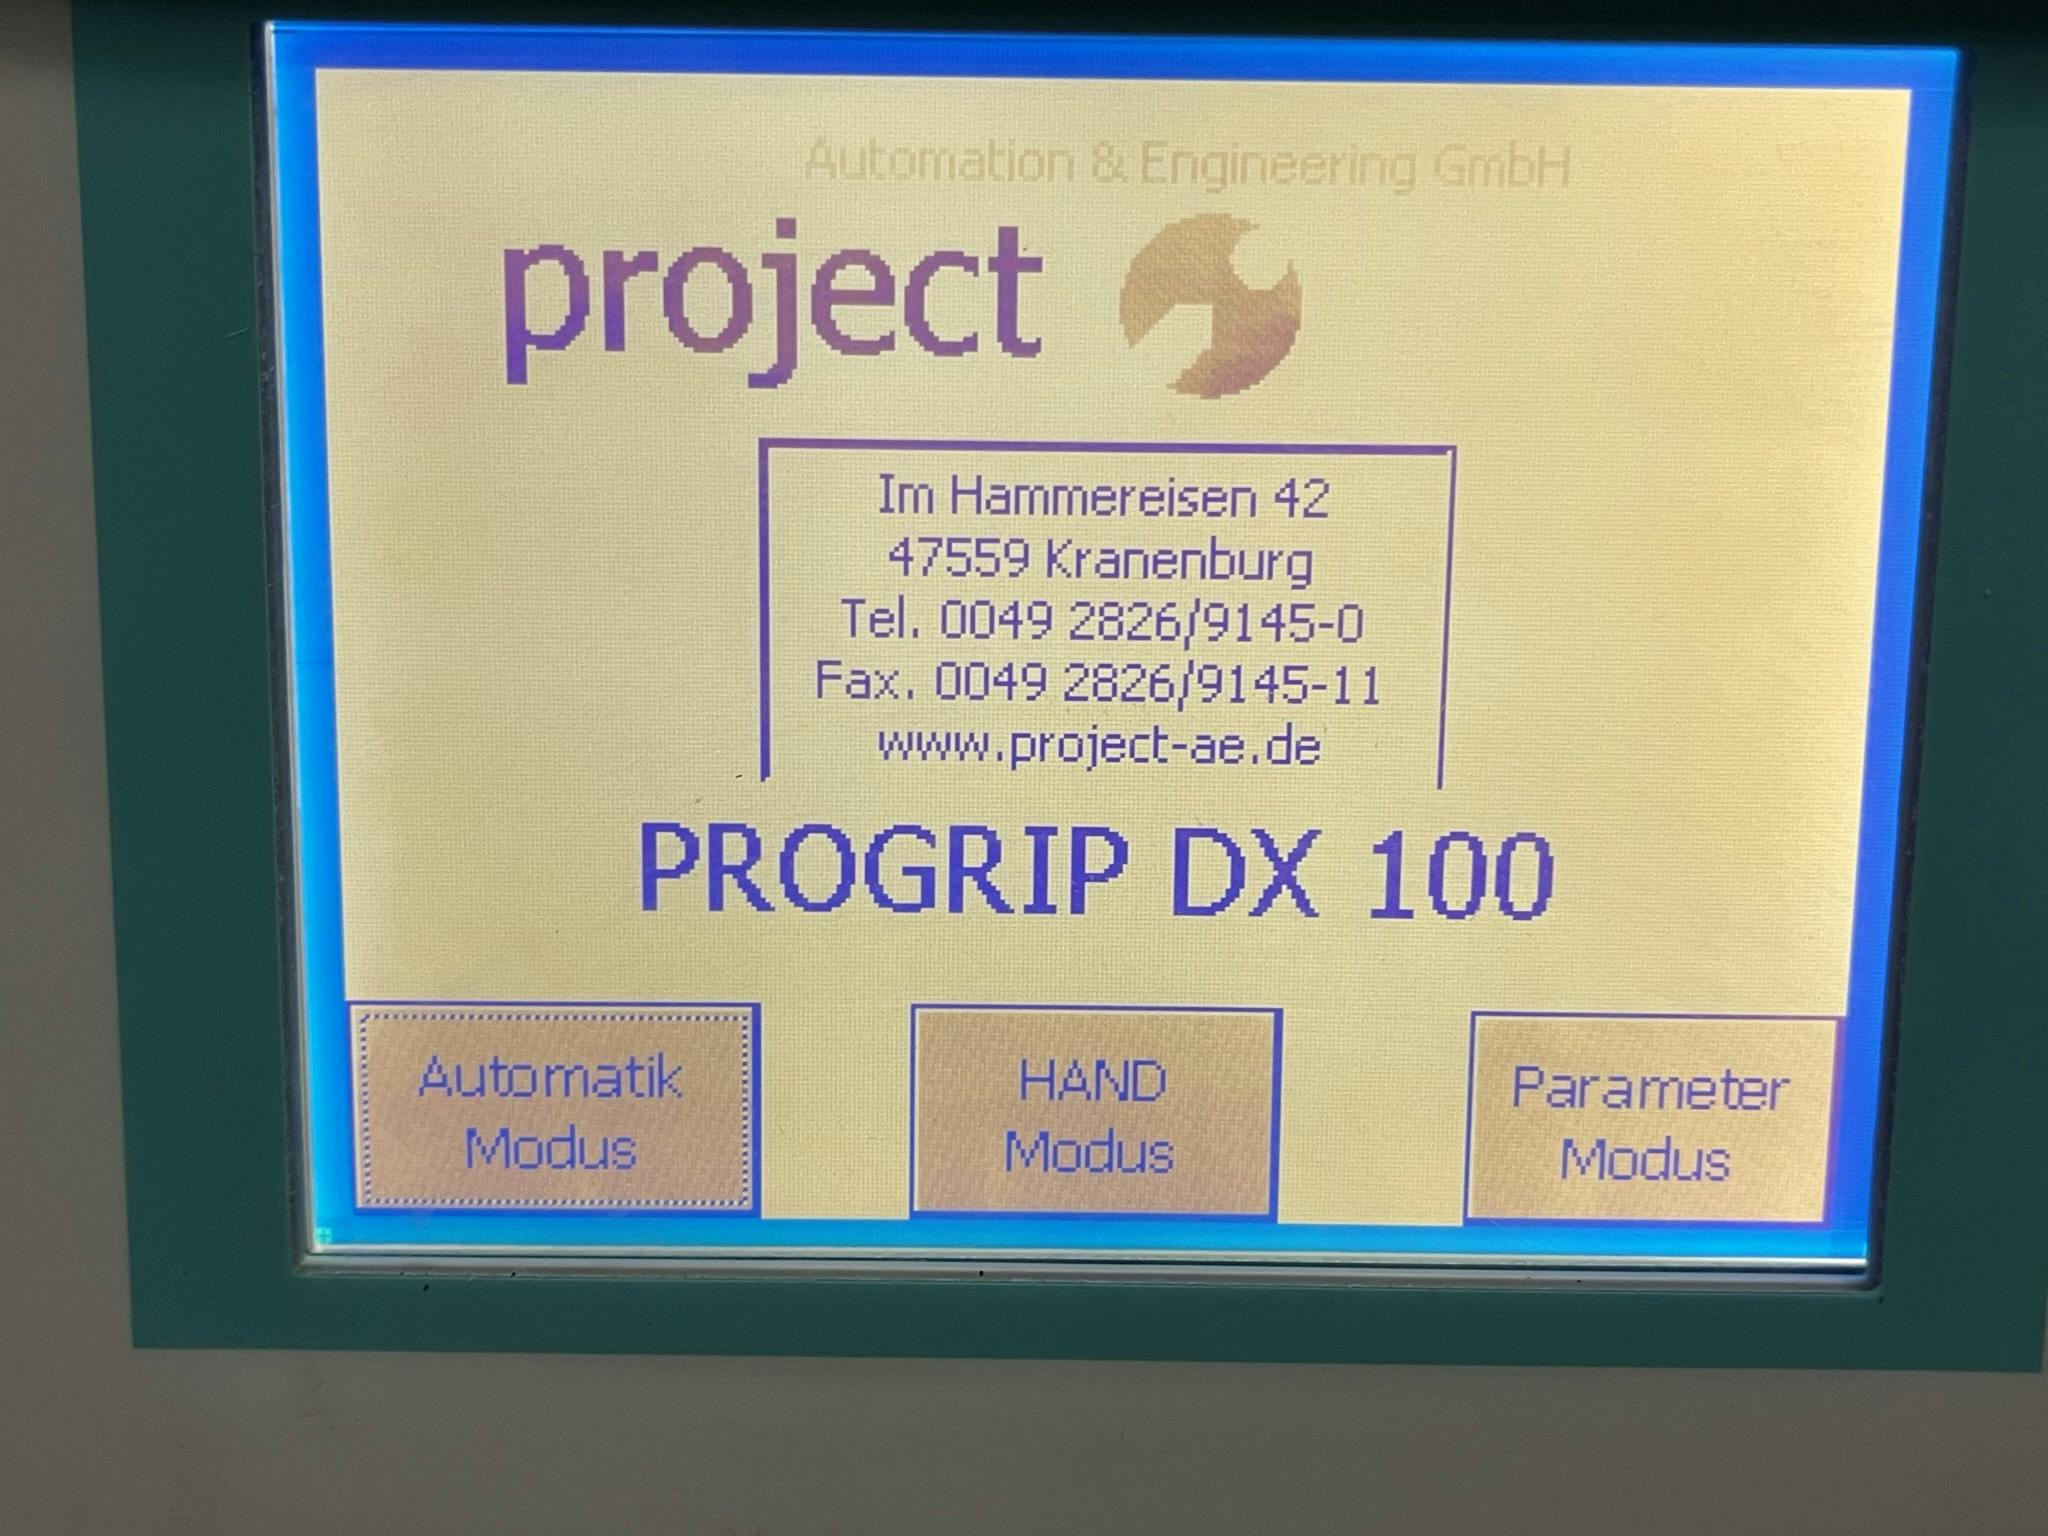 Détail du projet A & E Progrip DX100